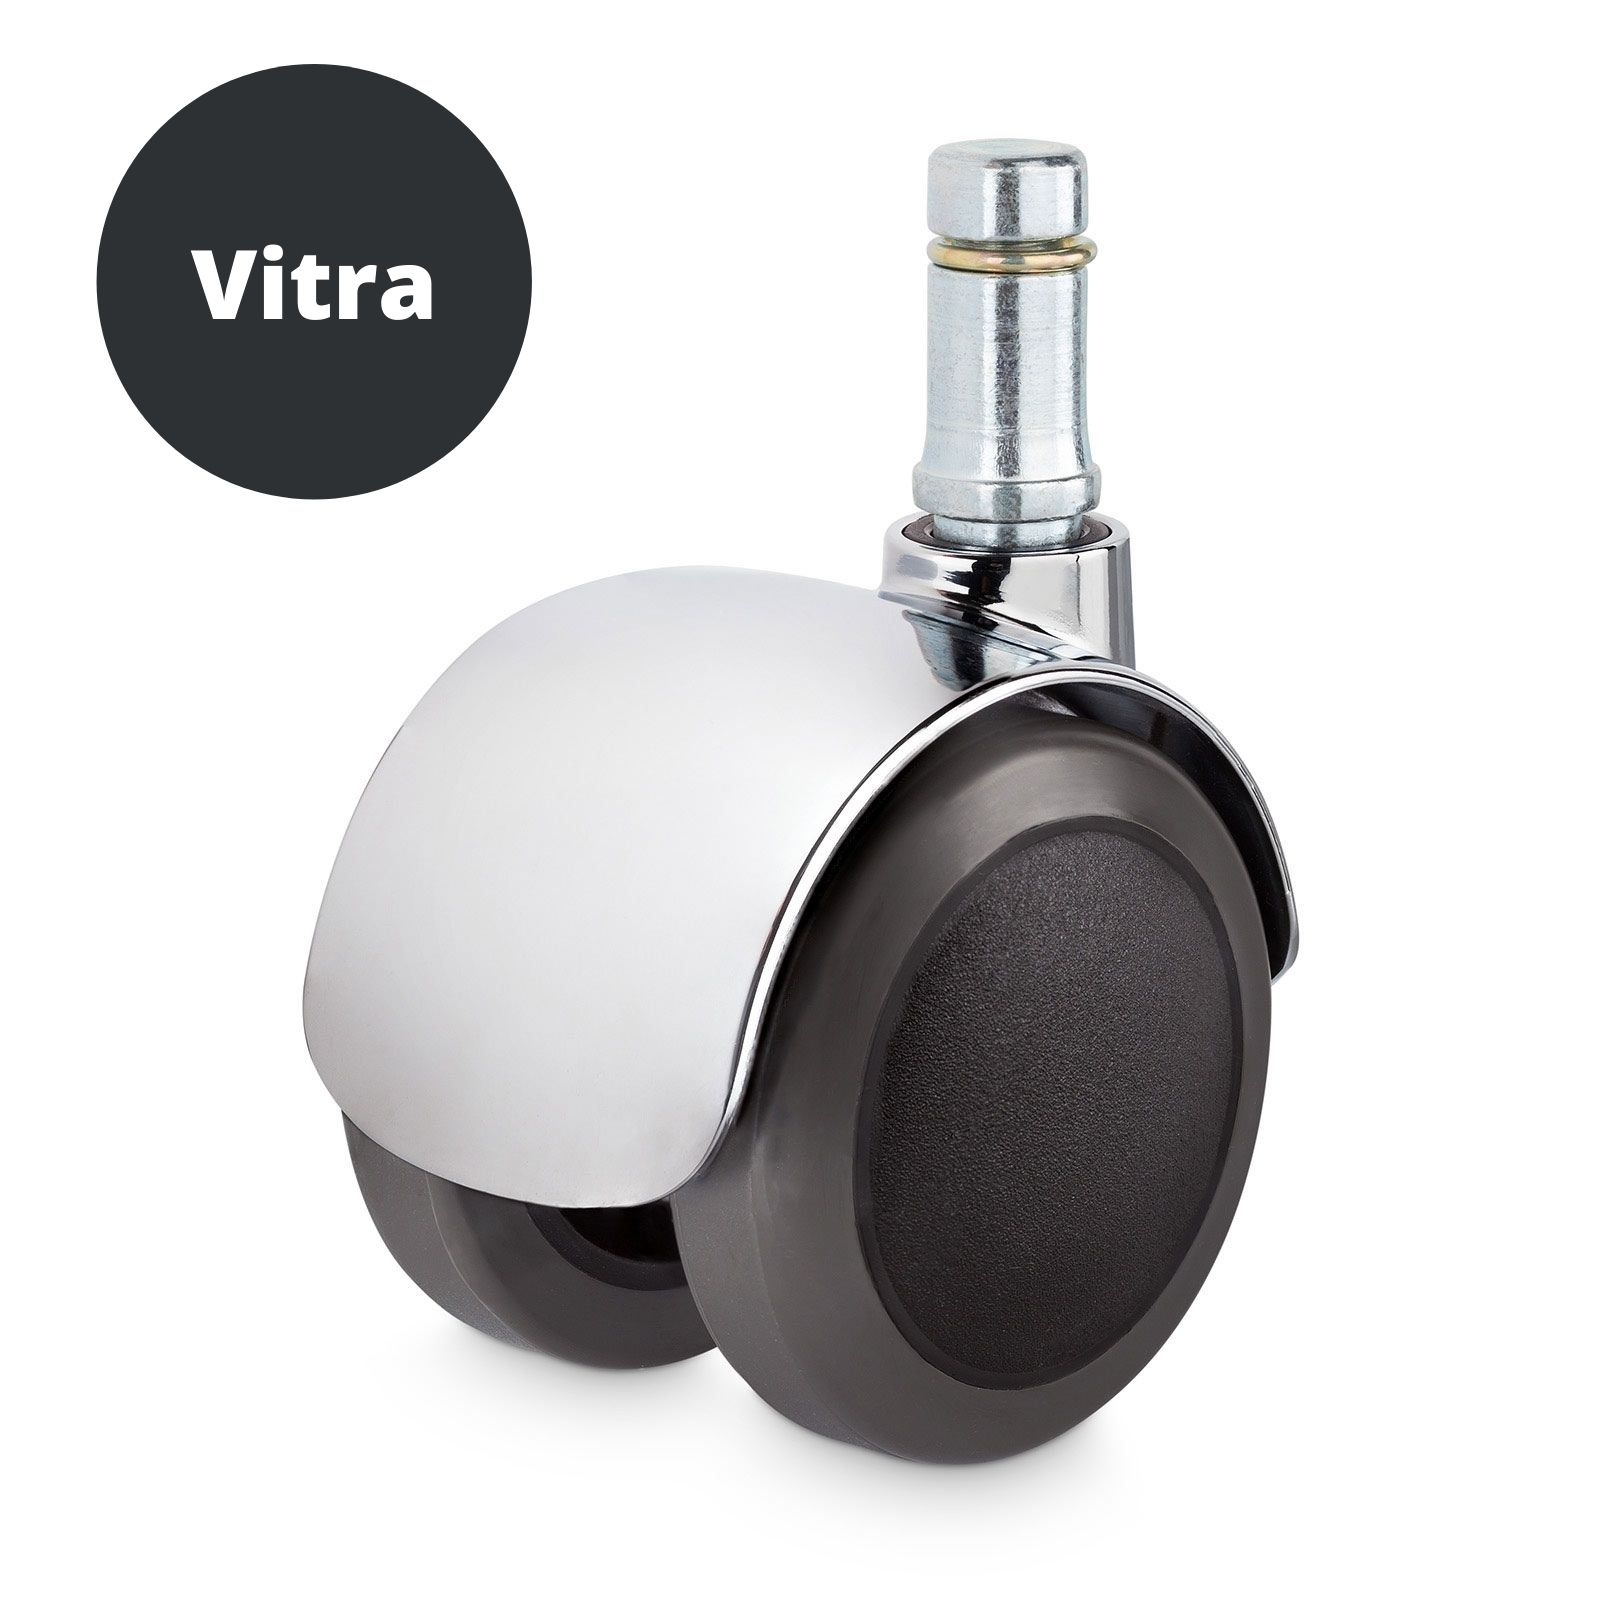 Hartbodenrollen mit Chrome-Kappe passend für Vitra EA-Modelle und Lobby Chair 